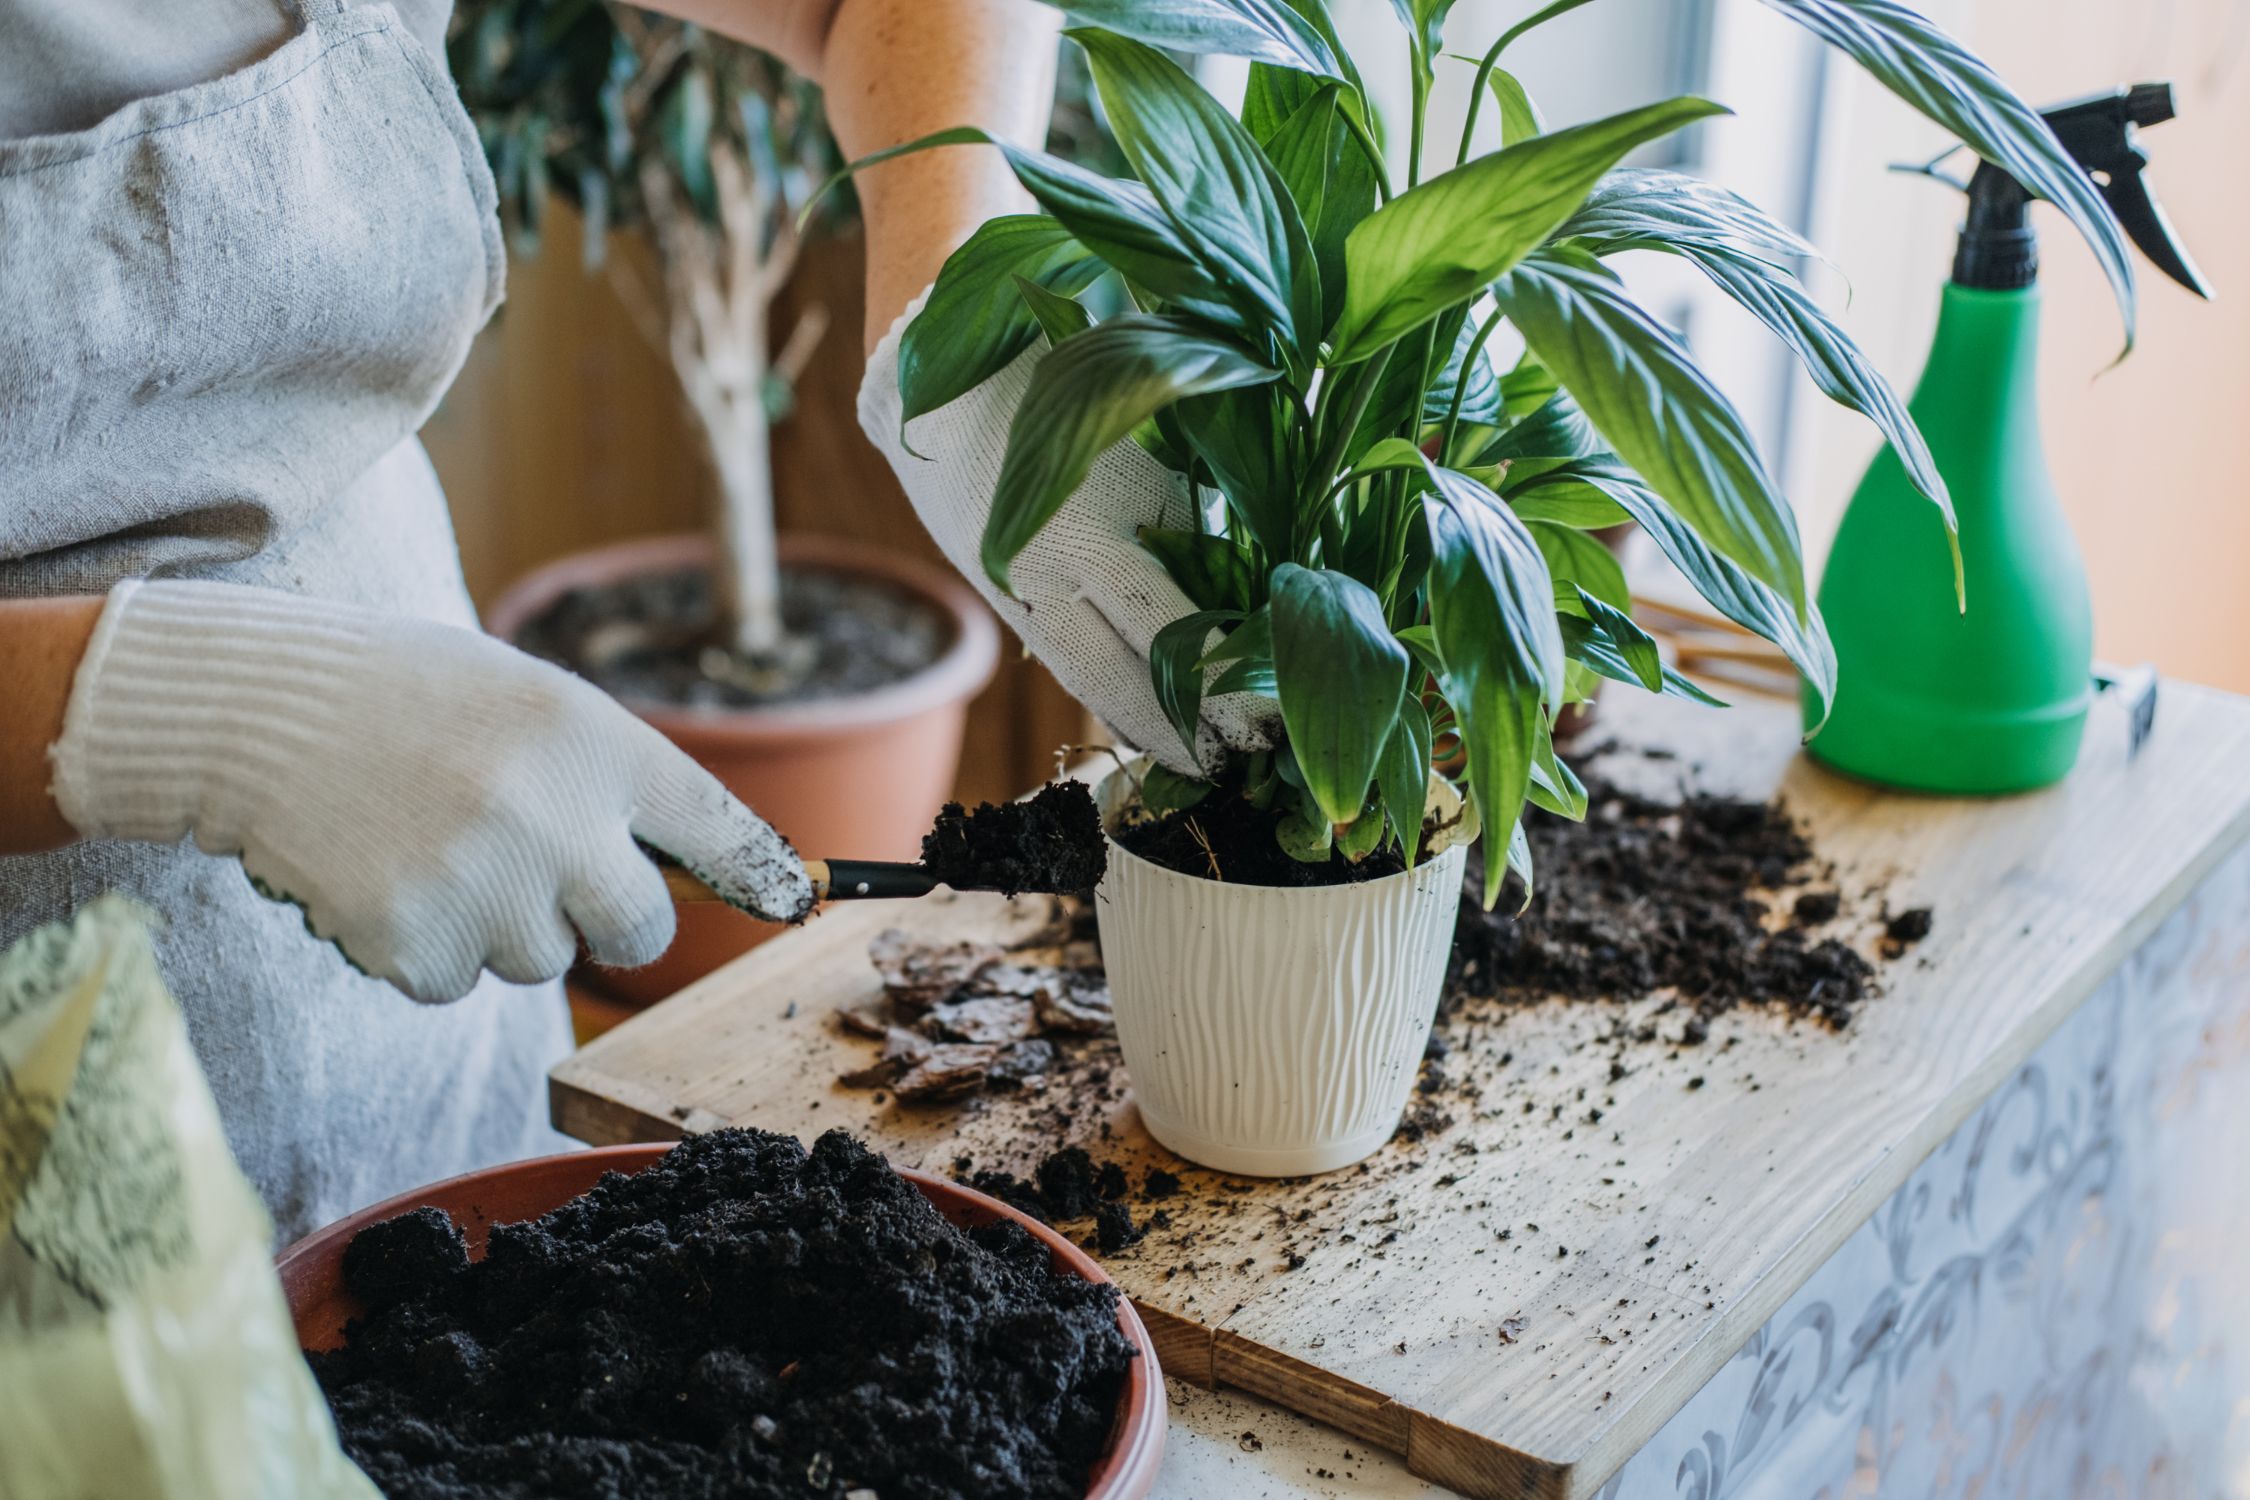 Gardening Tips: Top 5 Ways To De-Stress Your Plants